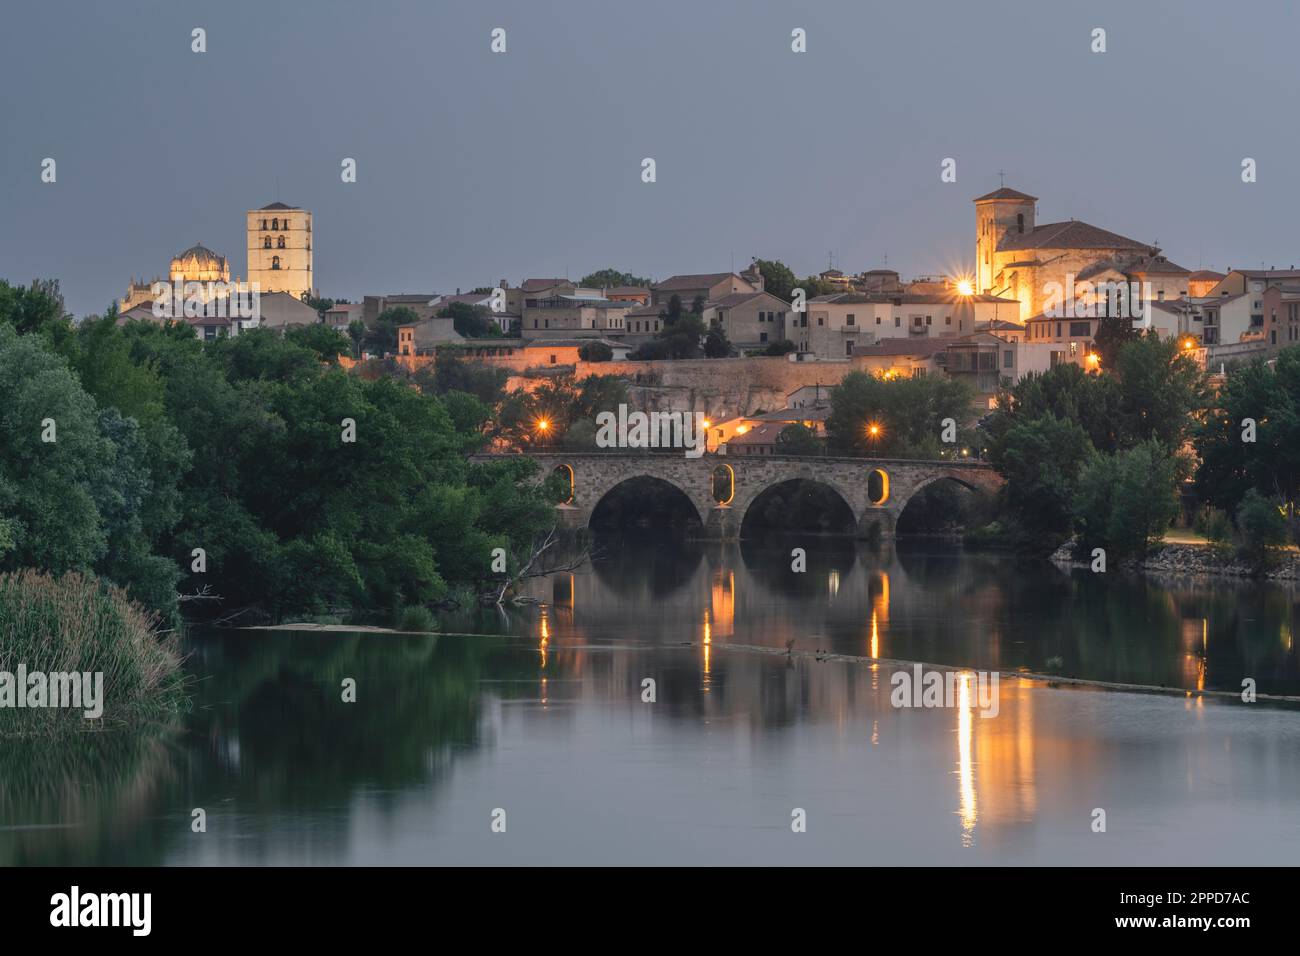 Spain, Castilla y Leon, Zamora, Douro river and Puente de Piedra bridge at dusk Stock Photo